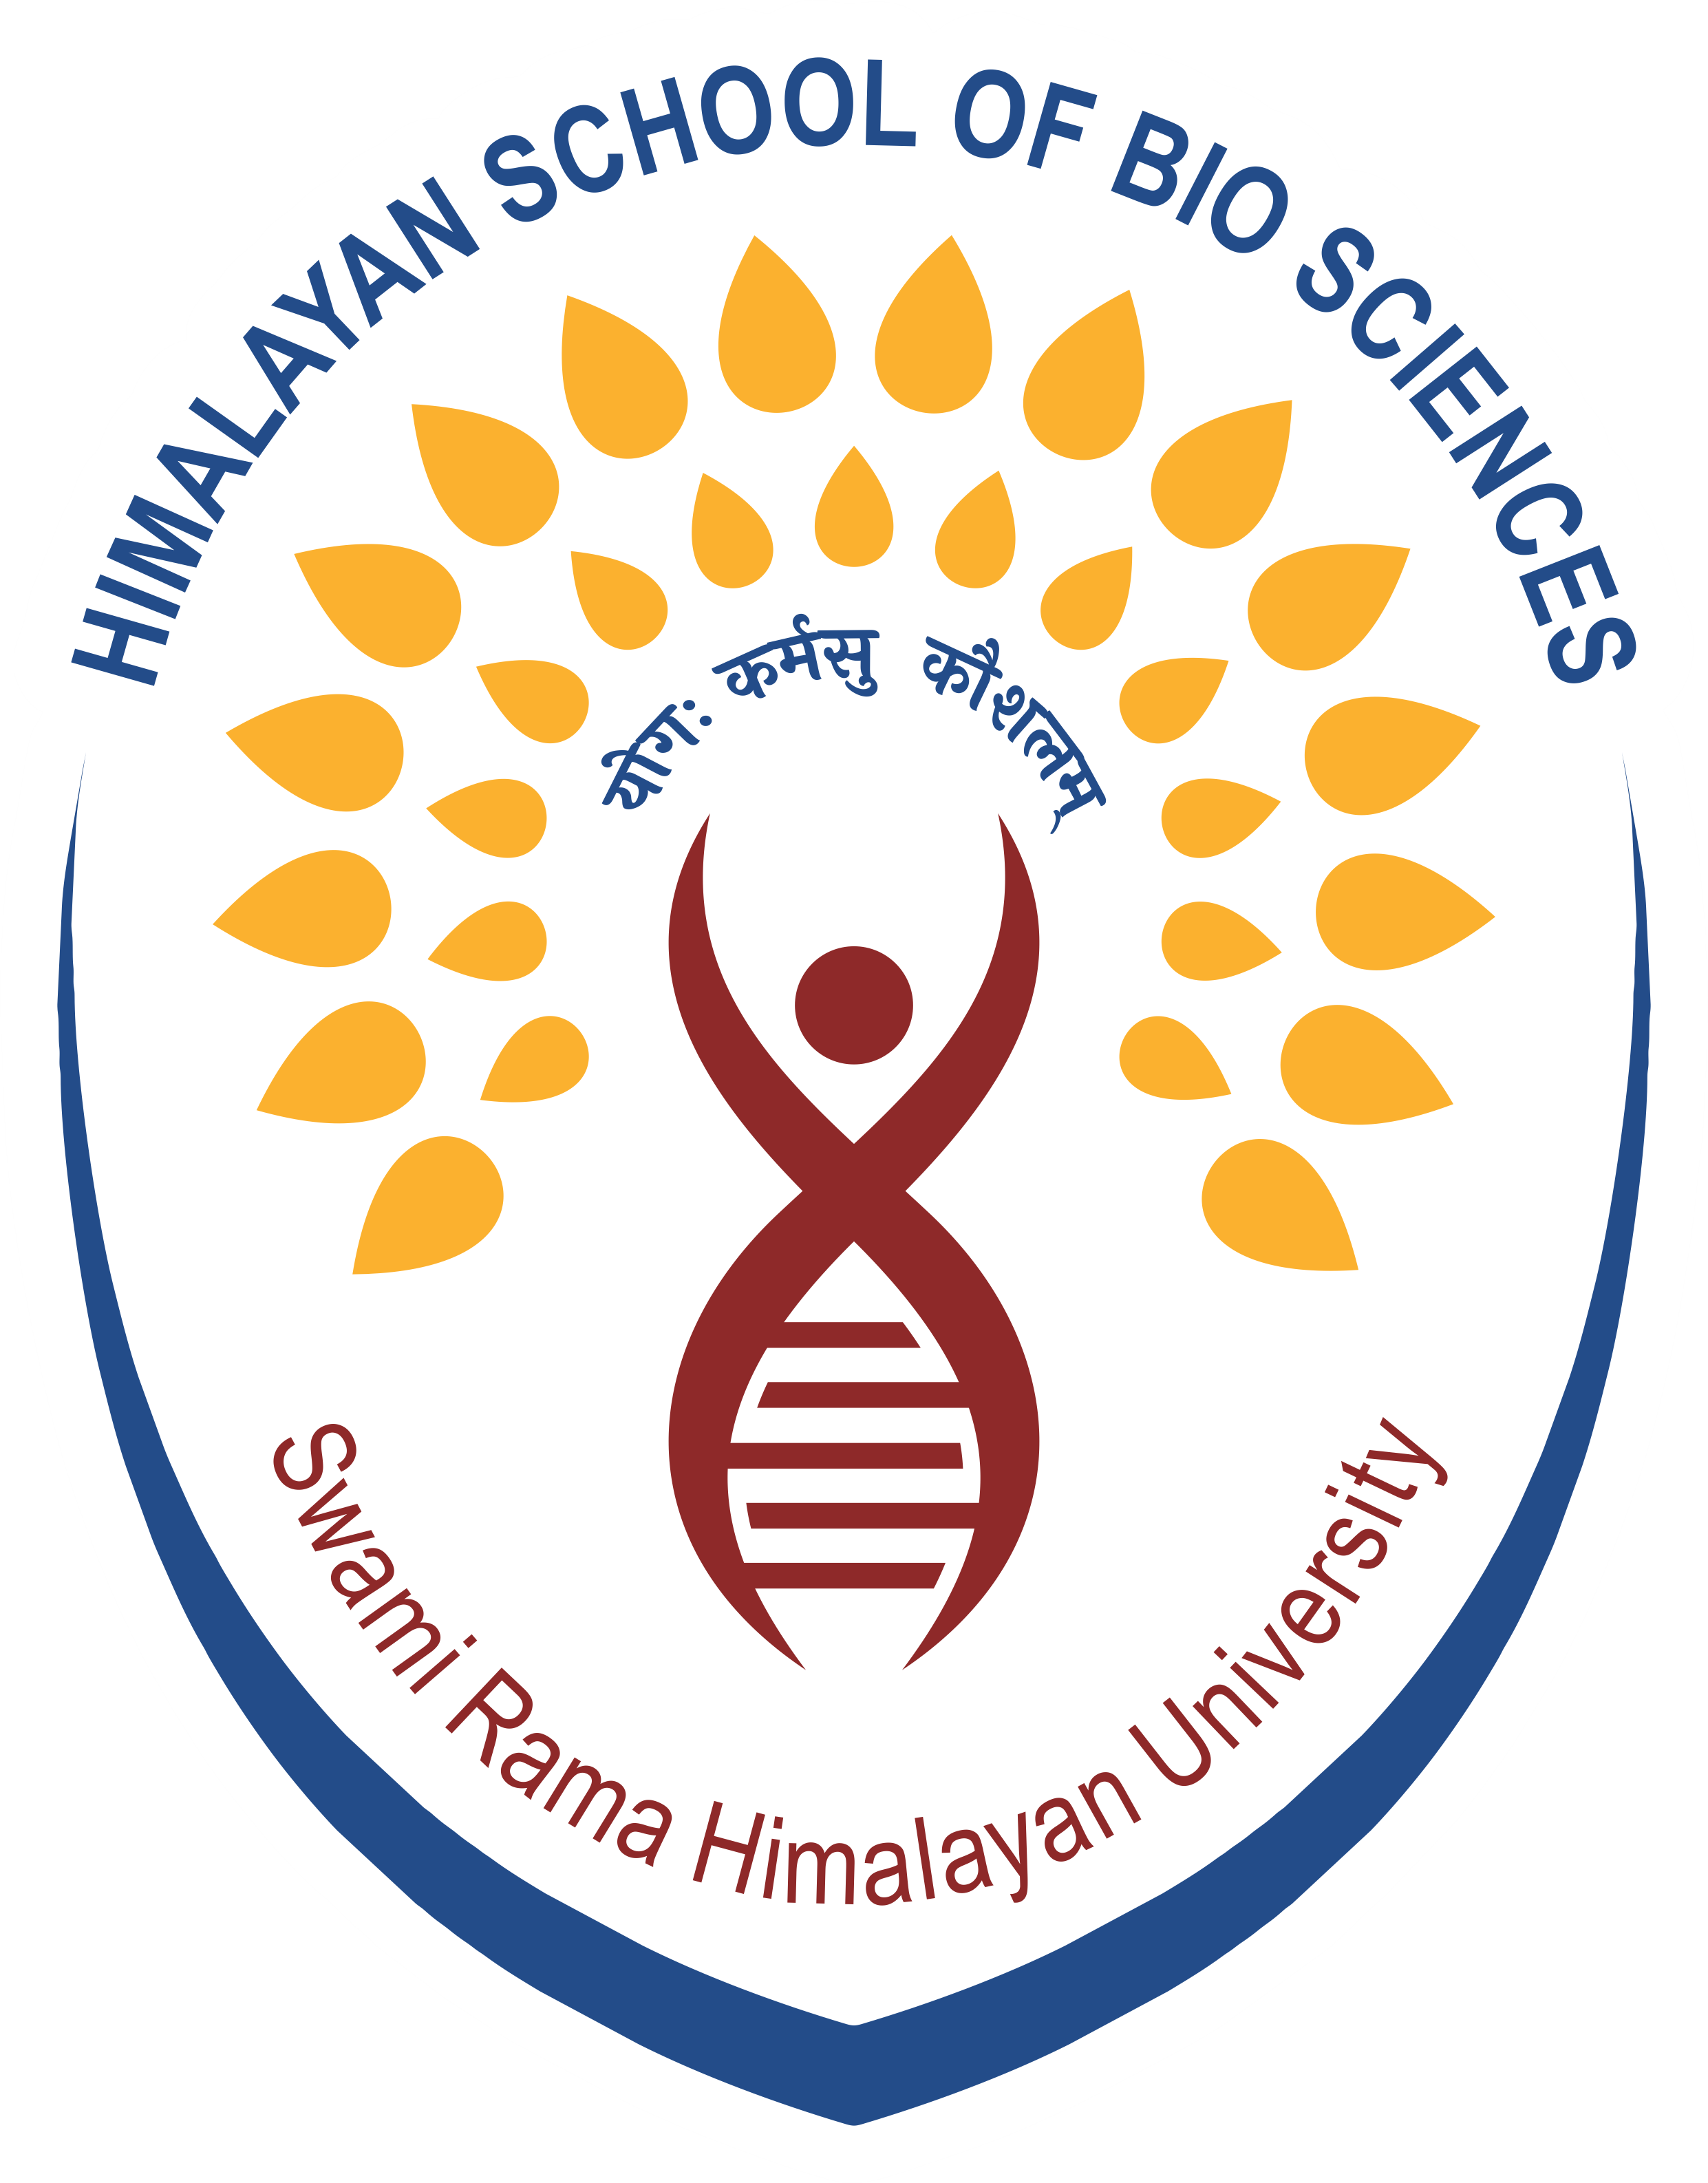 Himalayan School of Bio Sciences